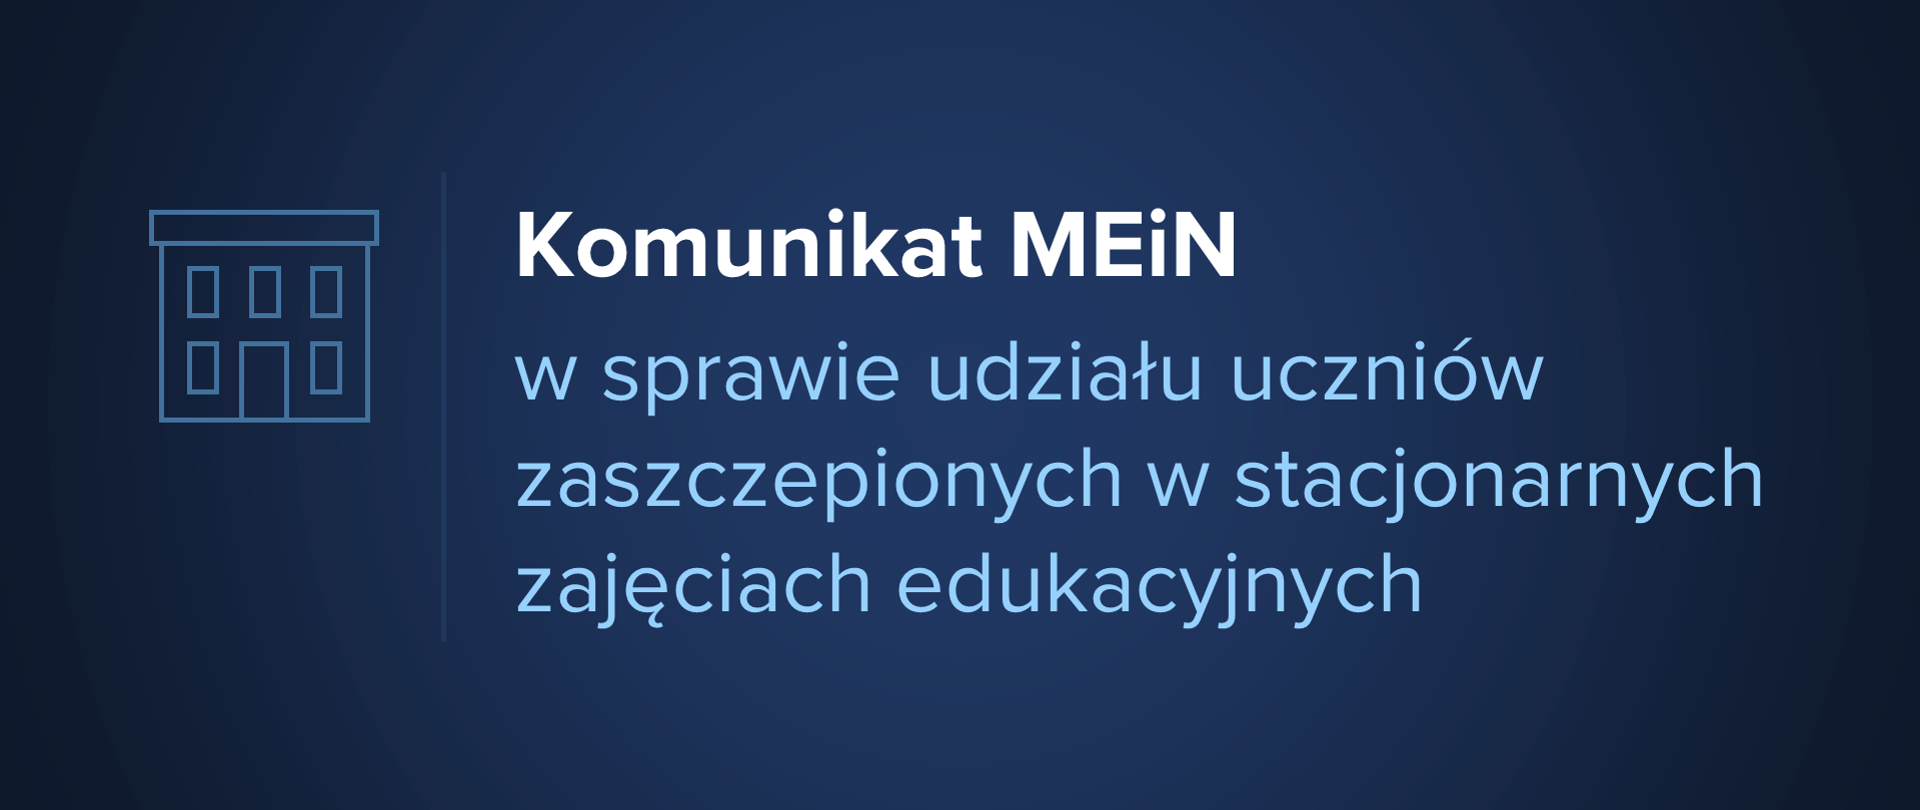 Grafika z tekstem: "komunikat MEiN w sprawie udziału uczniów zaszczepionych w stacjonarnych zajęciach edukacyjnych"